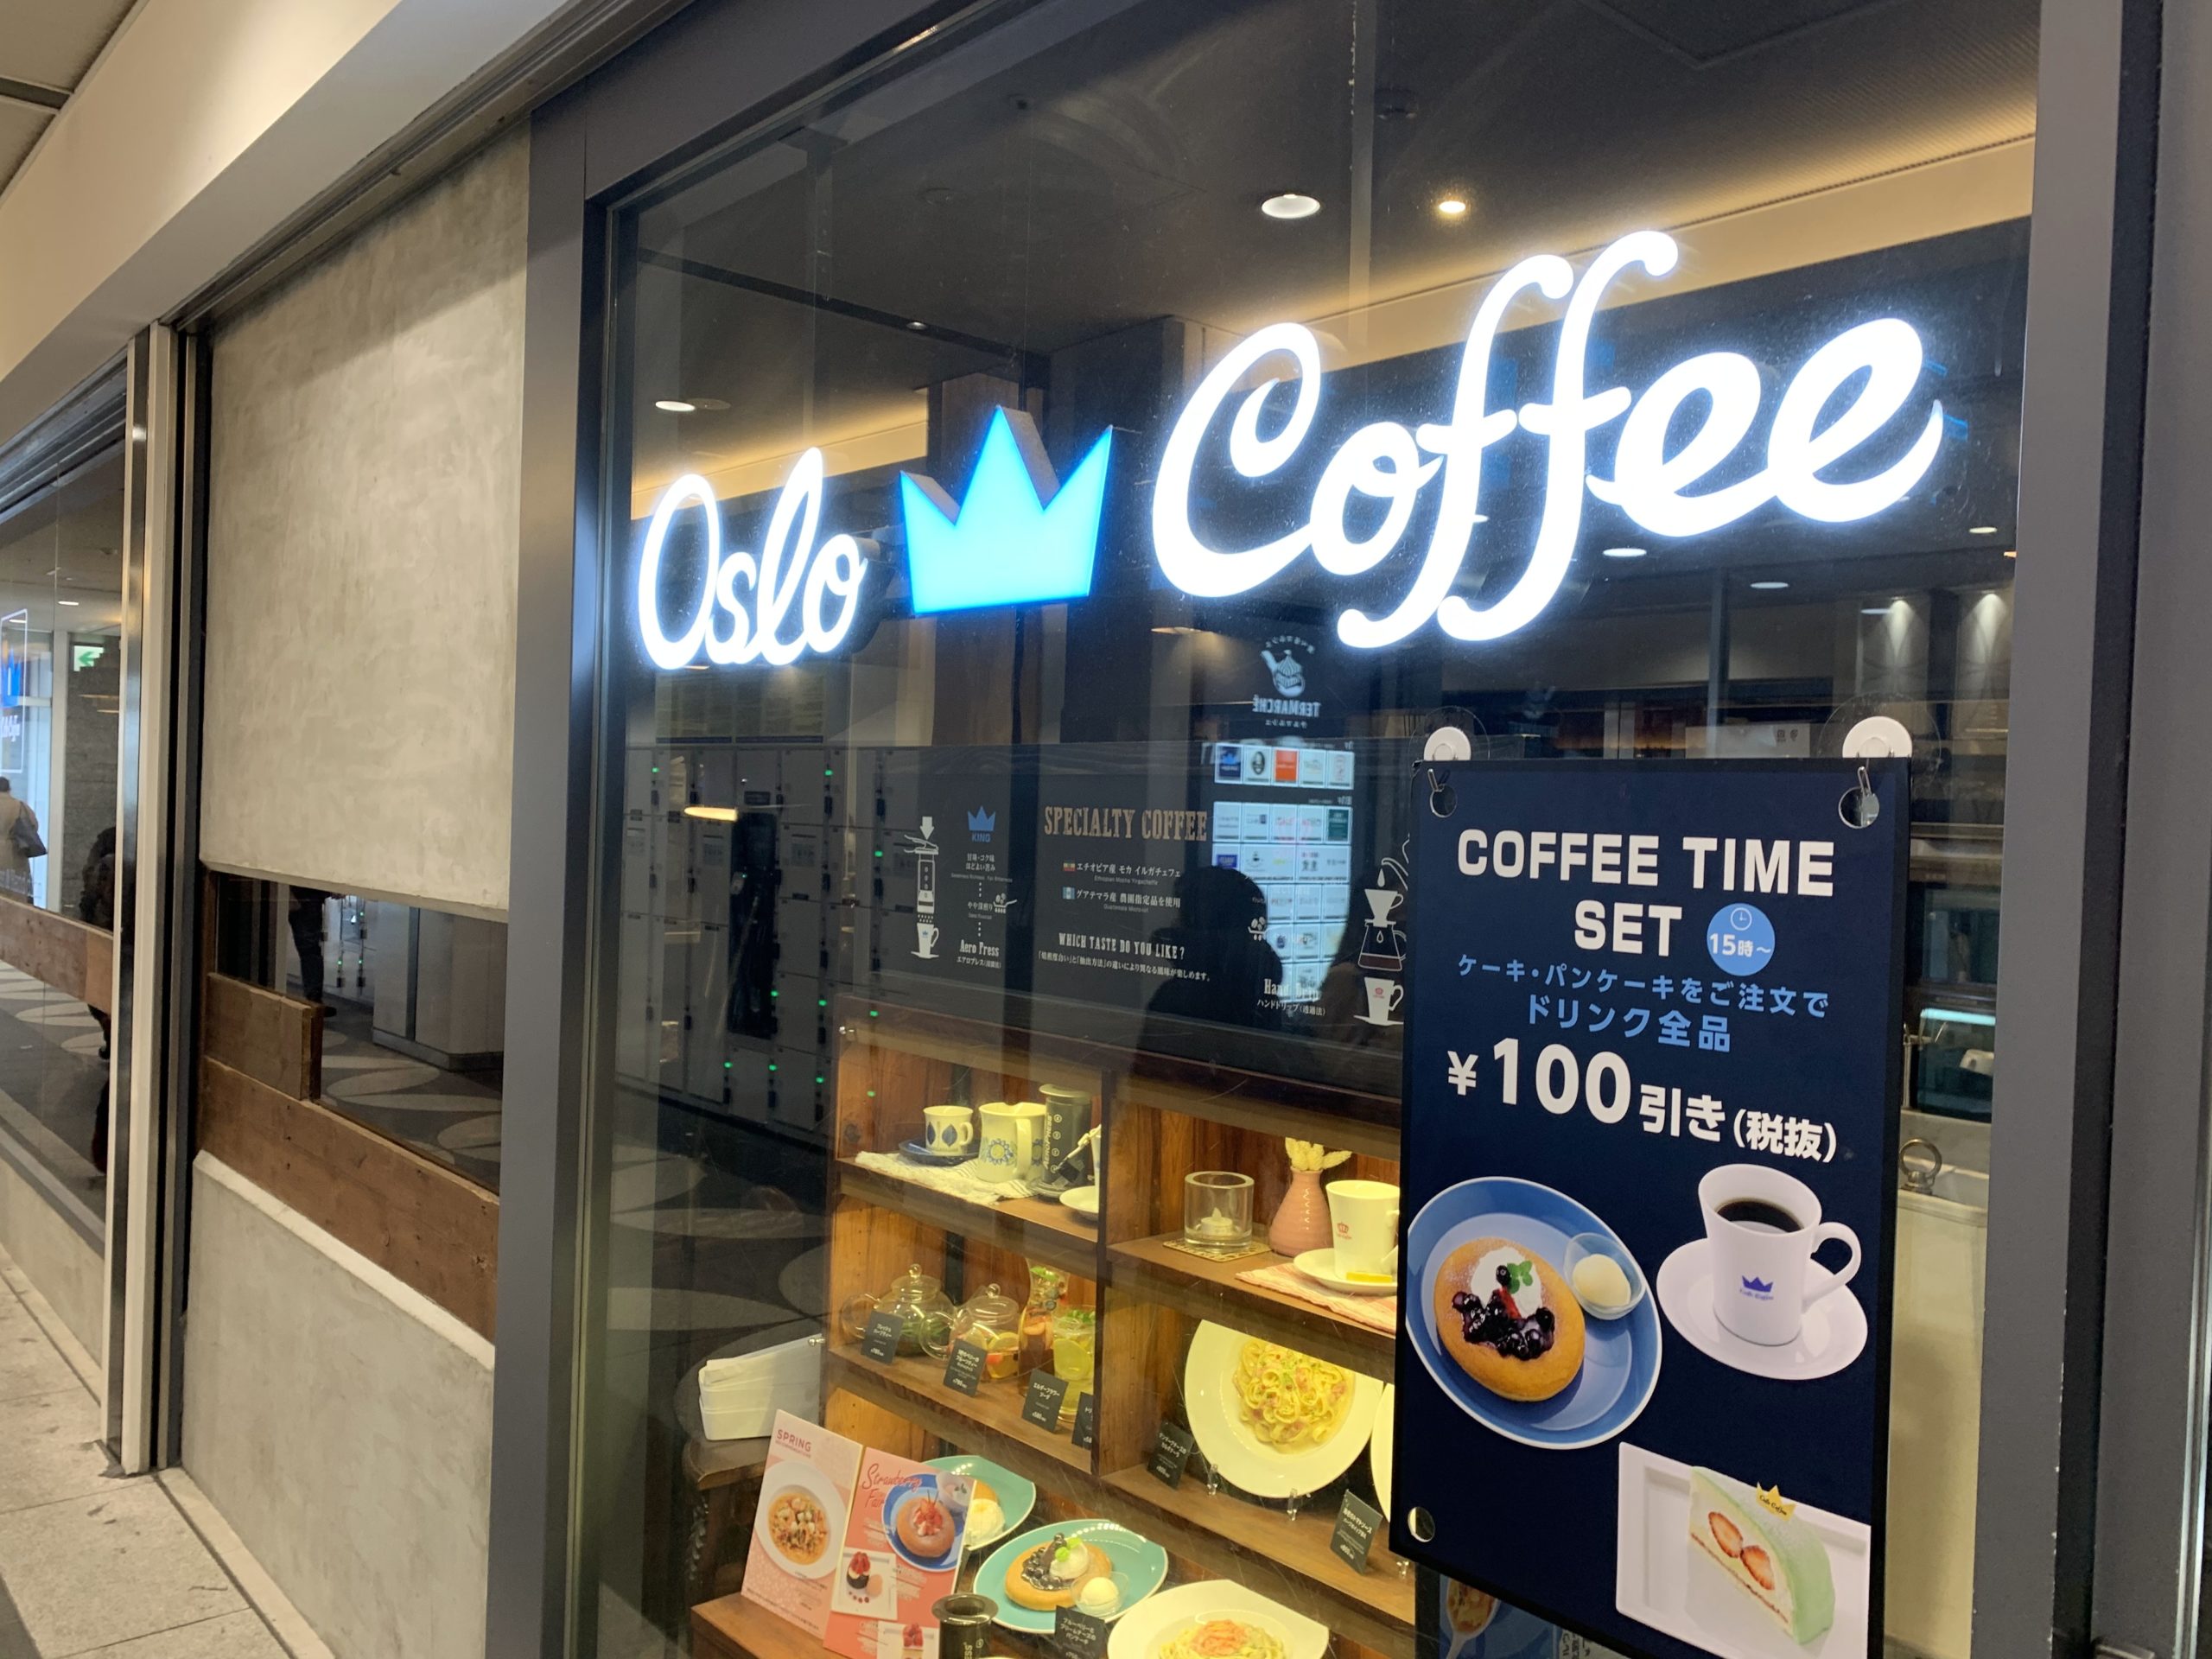 錦糸町駅直結でアクセス抜群のカフェ「oslo coffee」のアイキャッチ画像